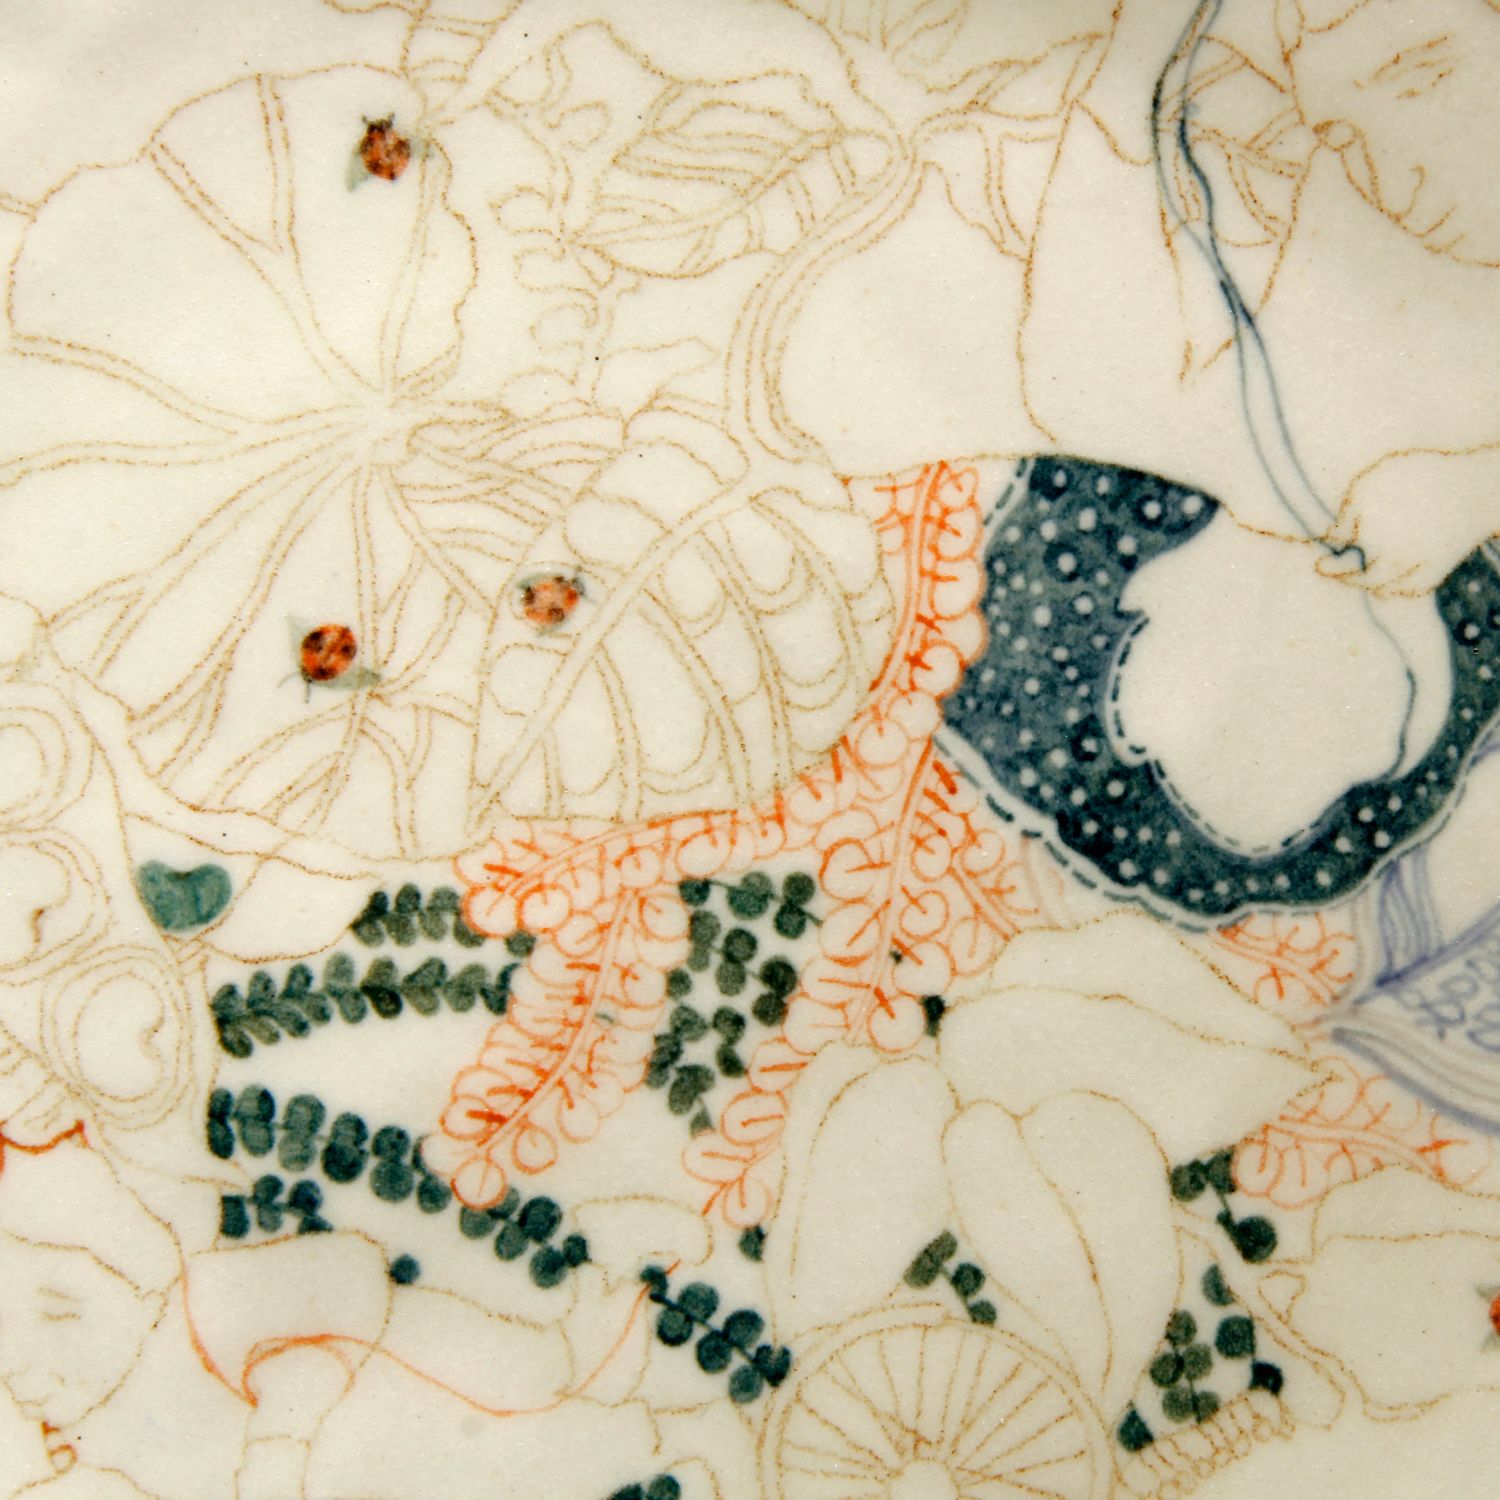 Japneet Kaur: Large Plate Phulkari, Embroidery of Flowers Product Image 5 of 5